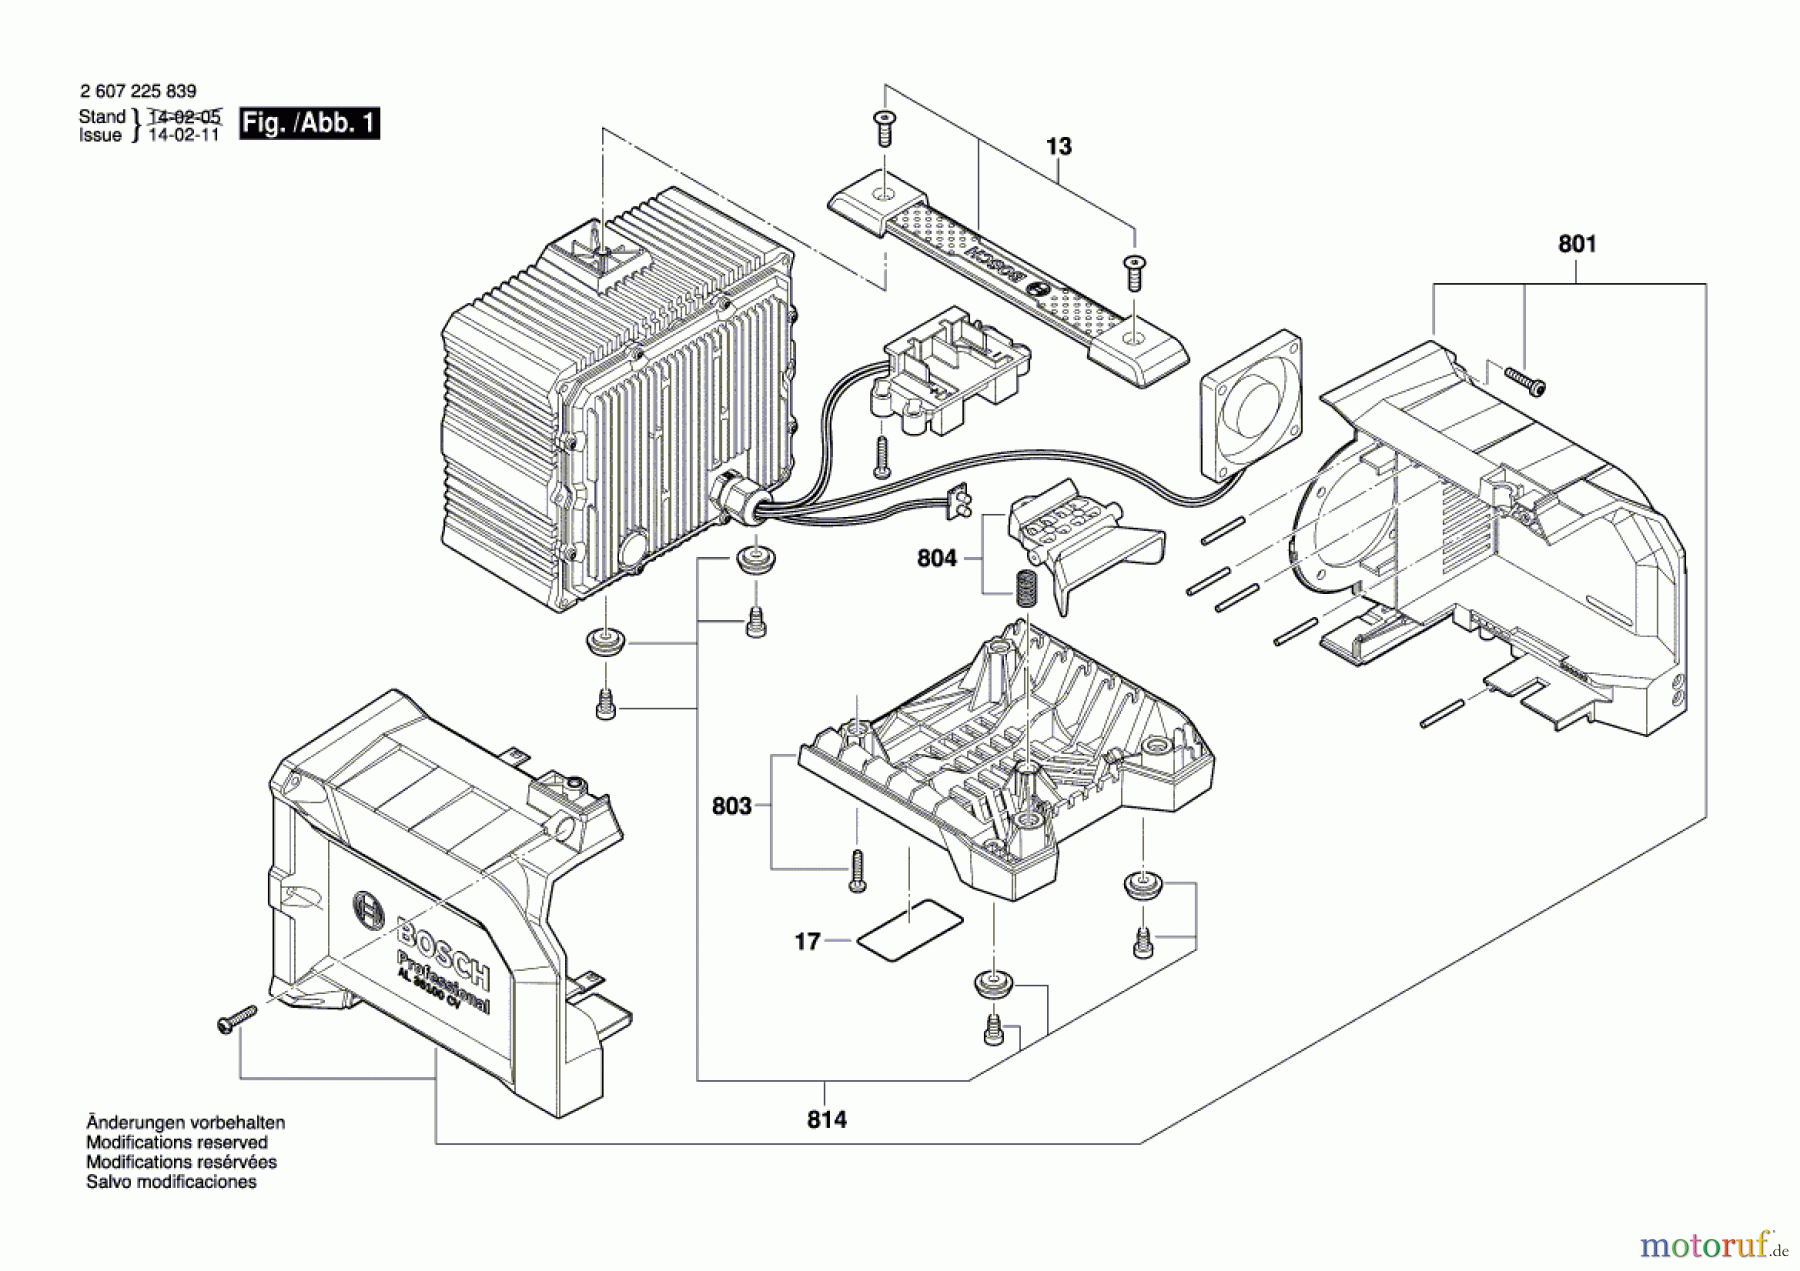  Bosch Werkzeug Schnell-Lader AL36100 CV Seite 1